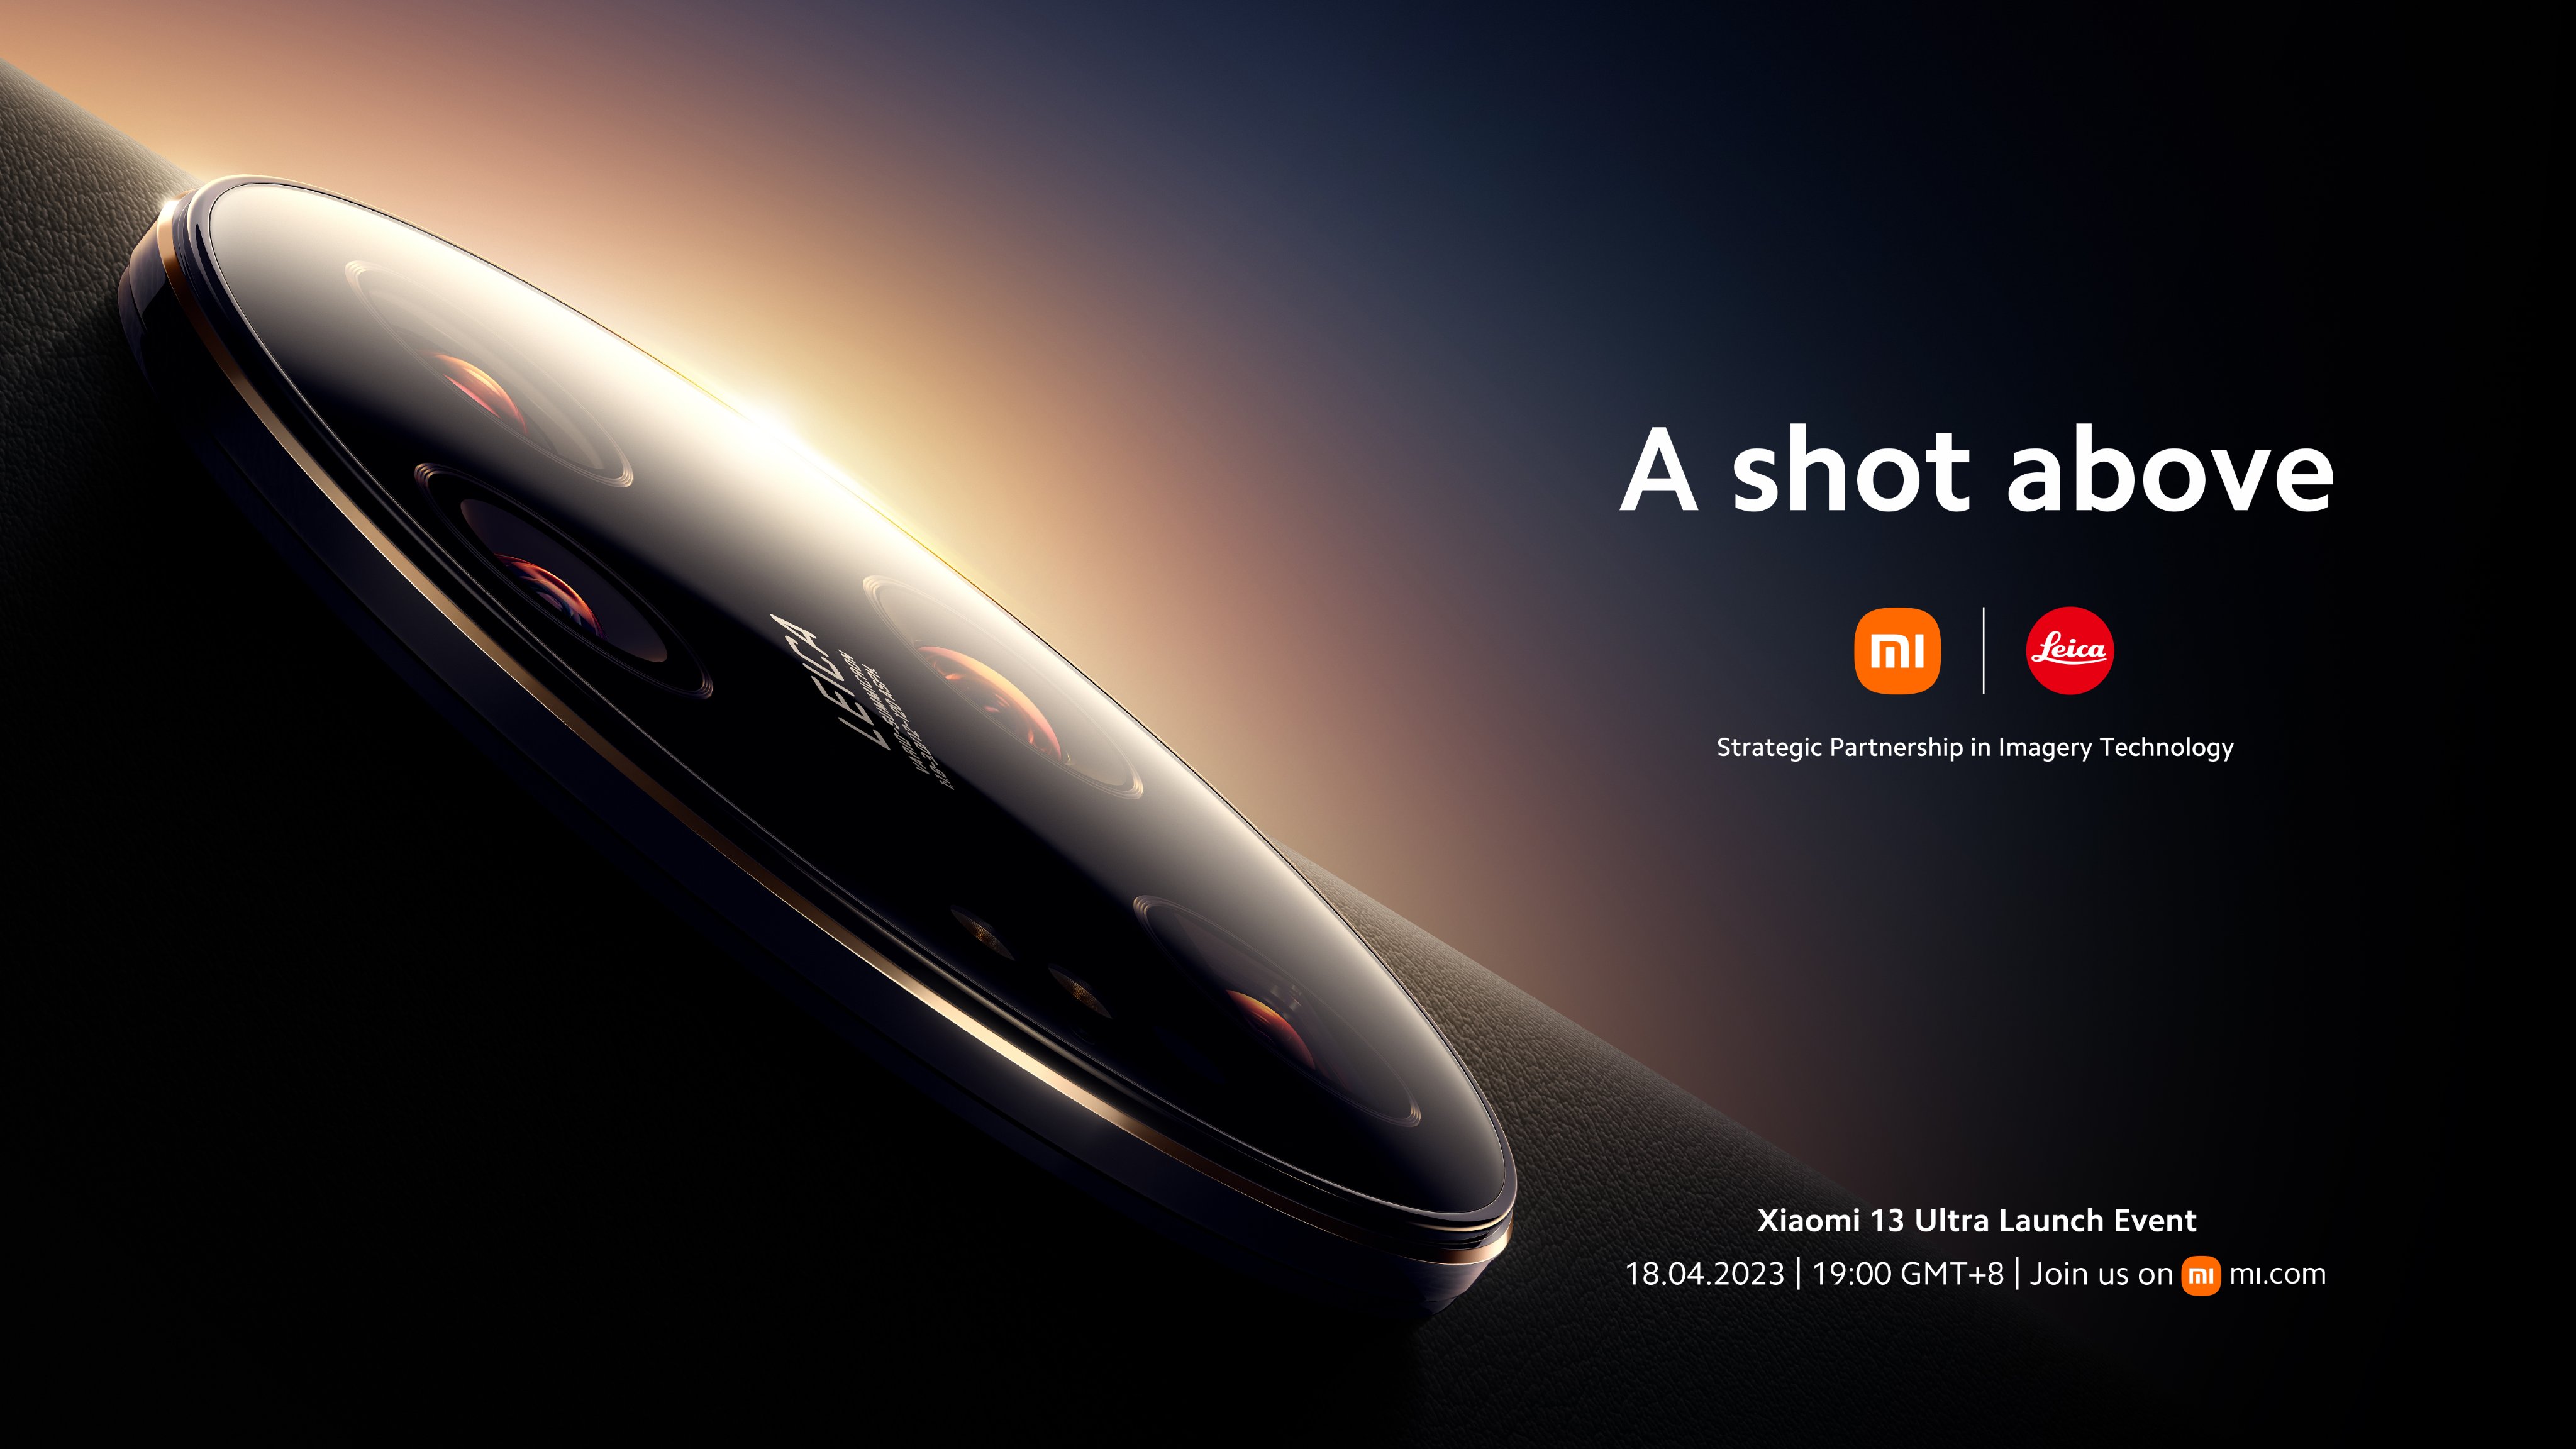 To już oficjalne: flagowiec Xiaomi 13 Ultra z aparatem Leica zostanie zaprezentowany 18 kwietnia